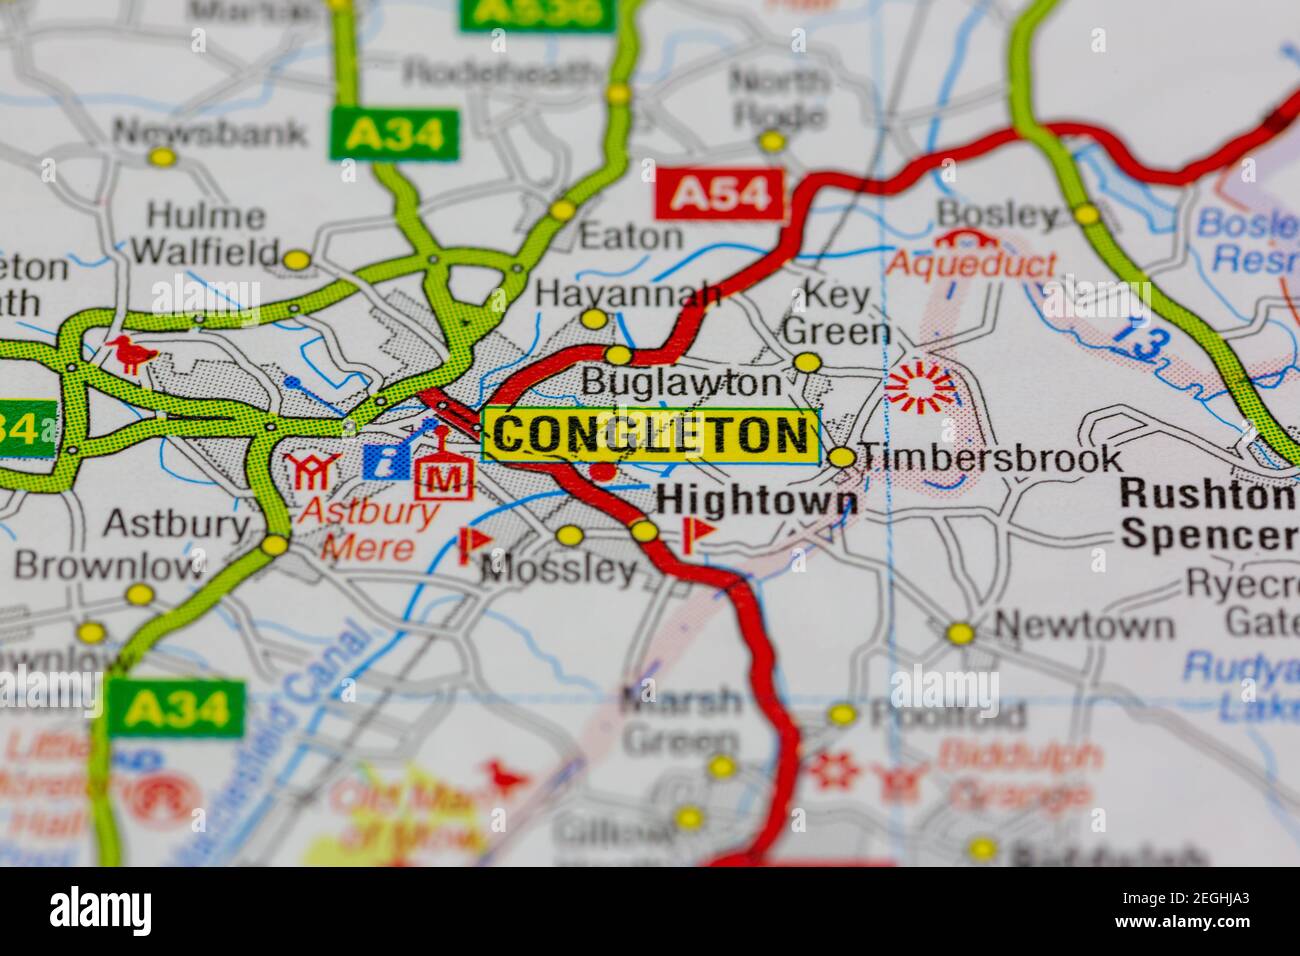 Congleton et ses environs sont indiqués sur une carte routière ou carte géographique Banque D'Images